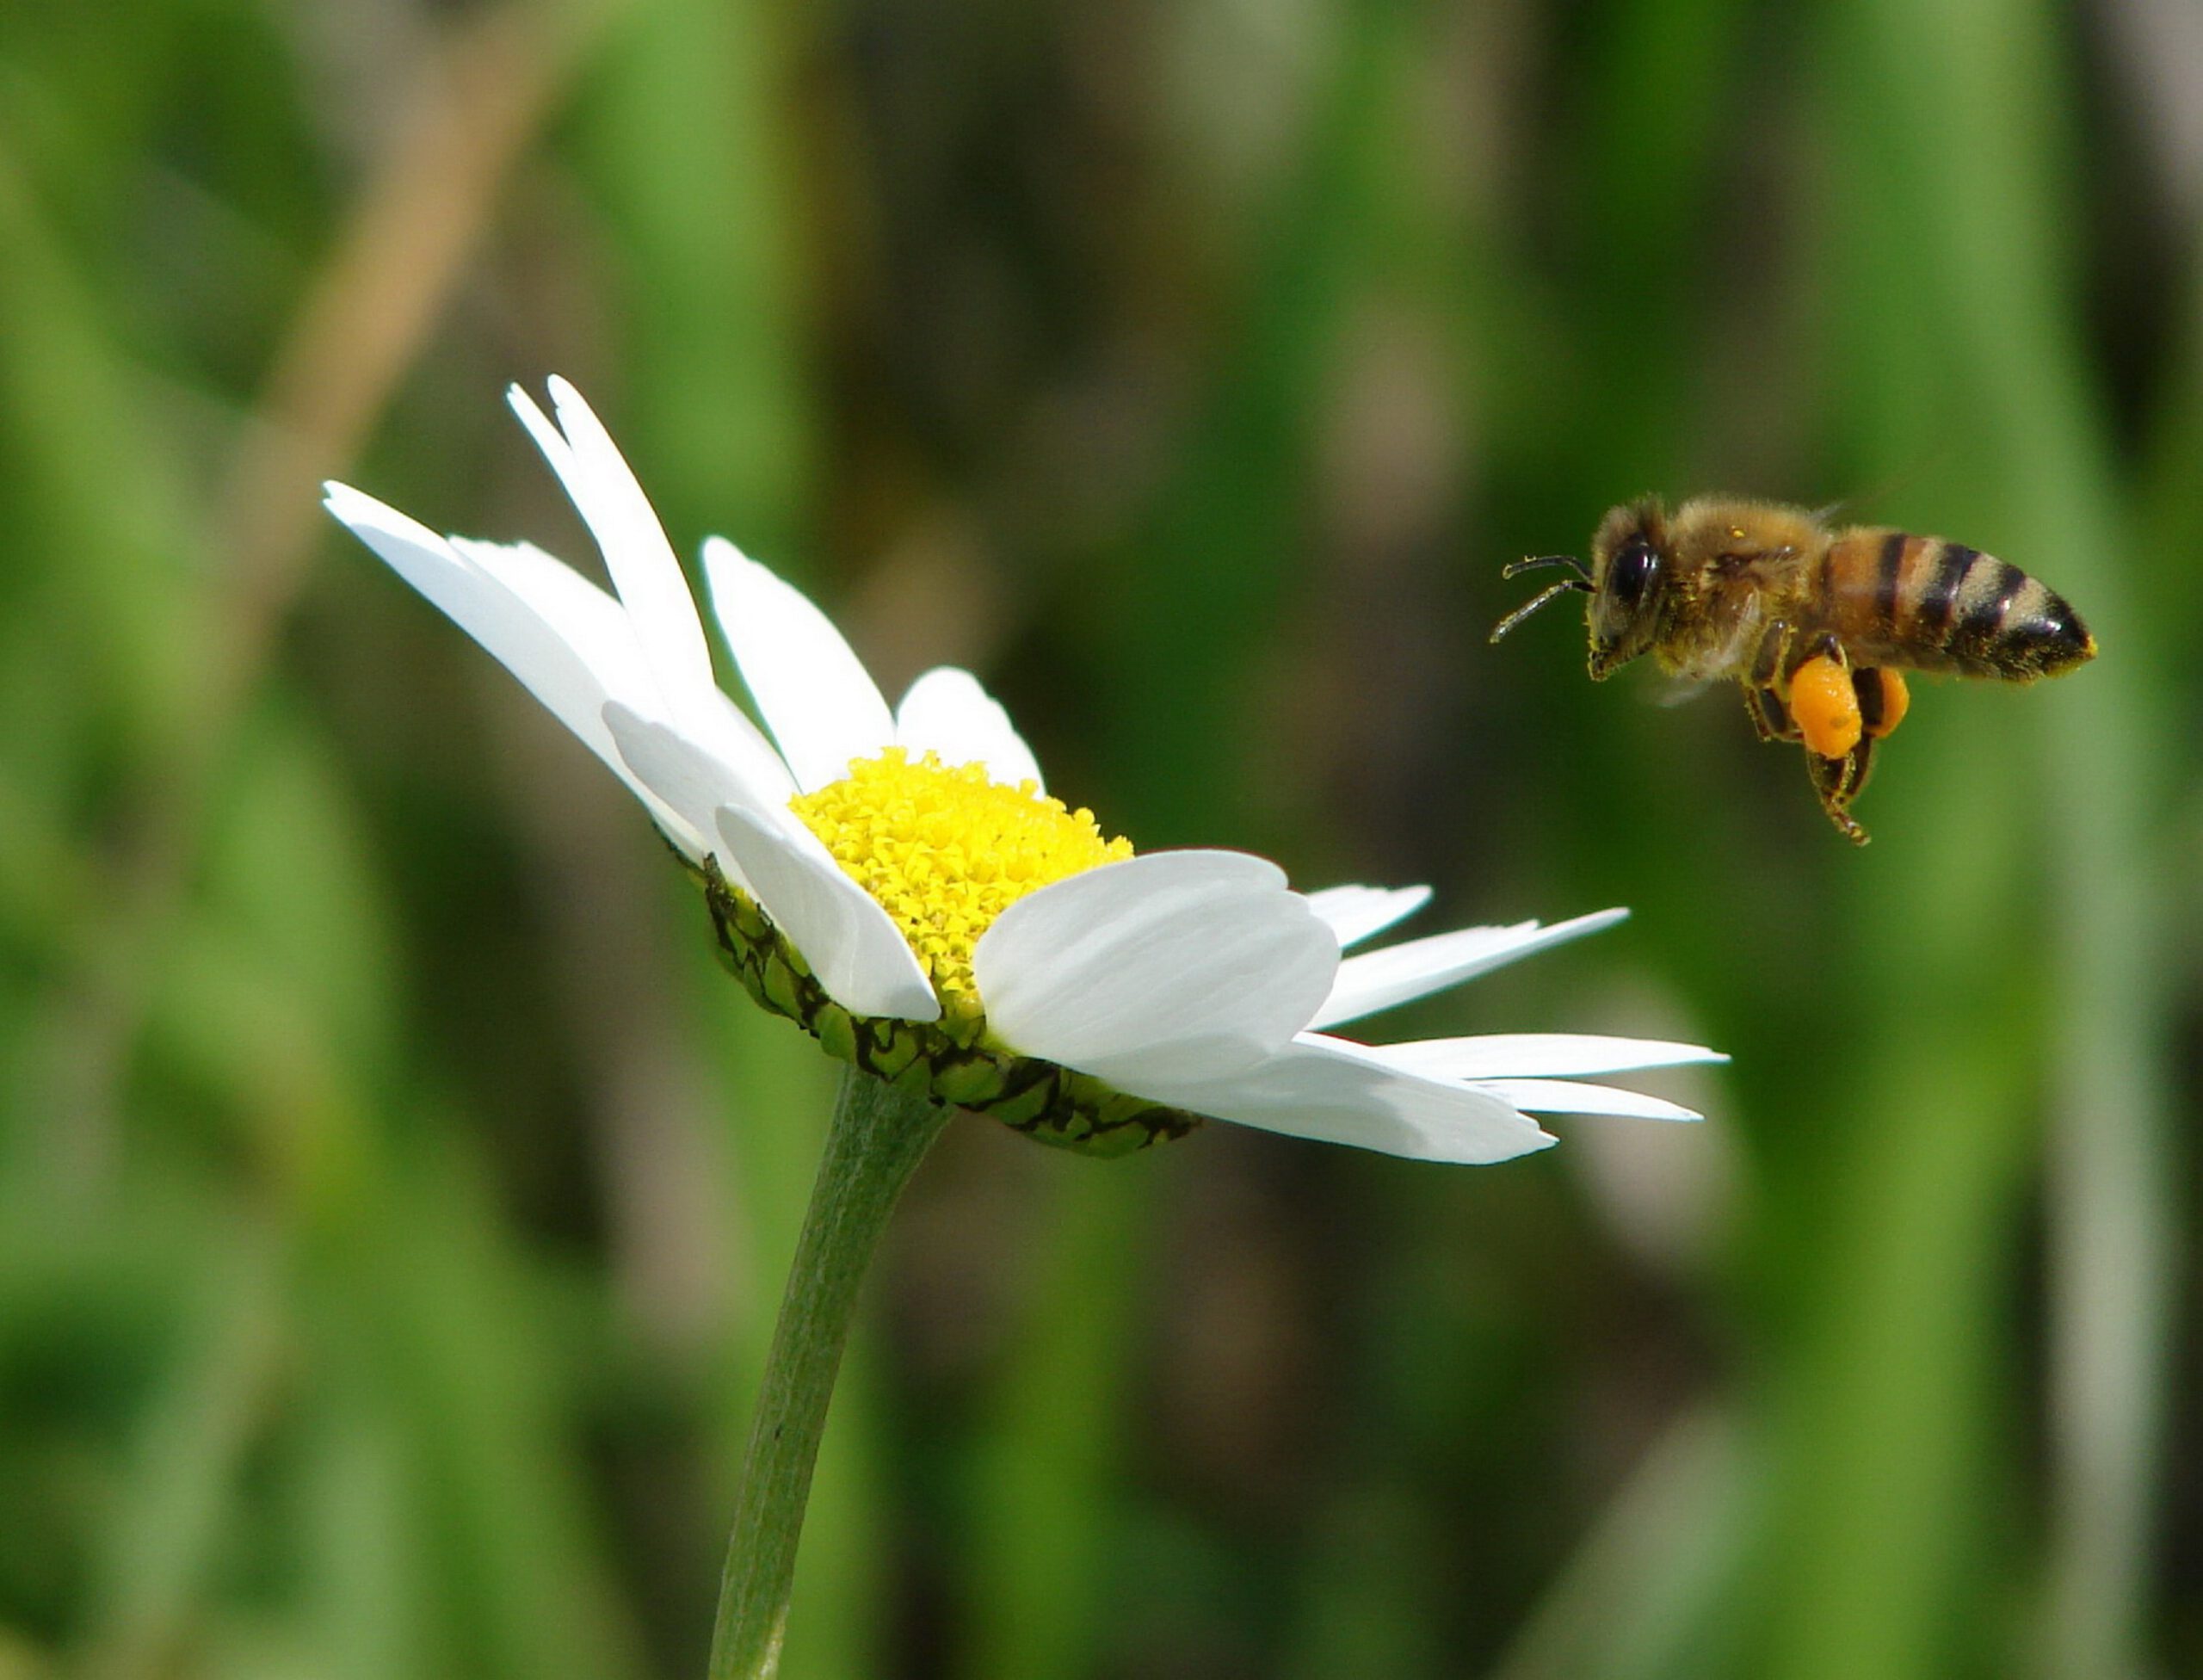 מחקר חדש מצא: דבורת הדבש יכולה להבחין בין מספר זוגי לאי זוגי כמו בני האדם